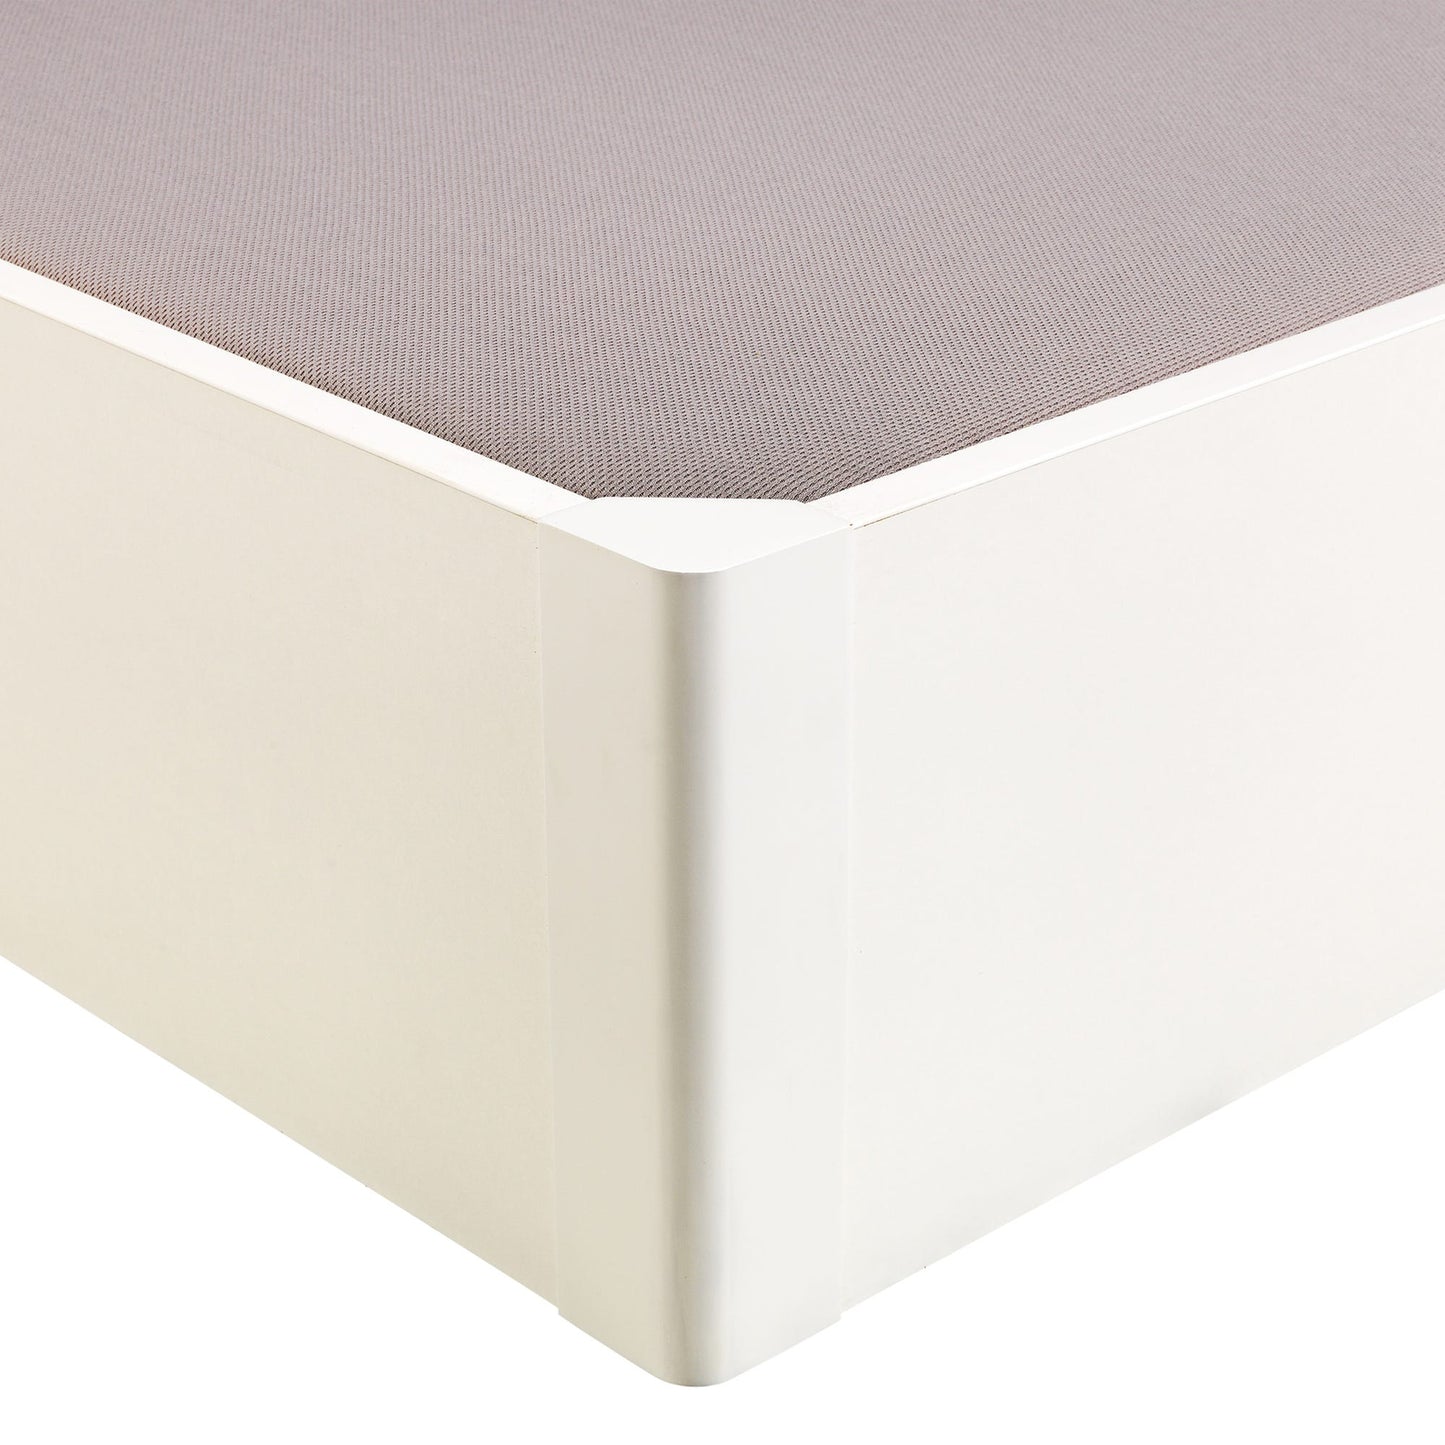 Canapé abatible de madera tapa única de color blanco - DESIGN - 80x190